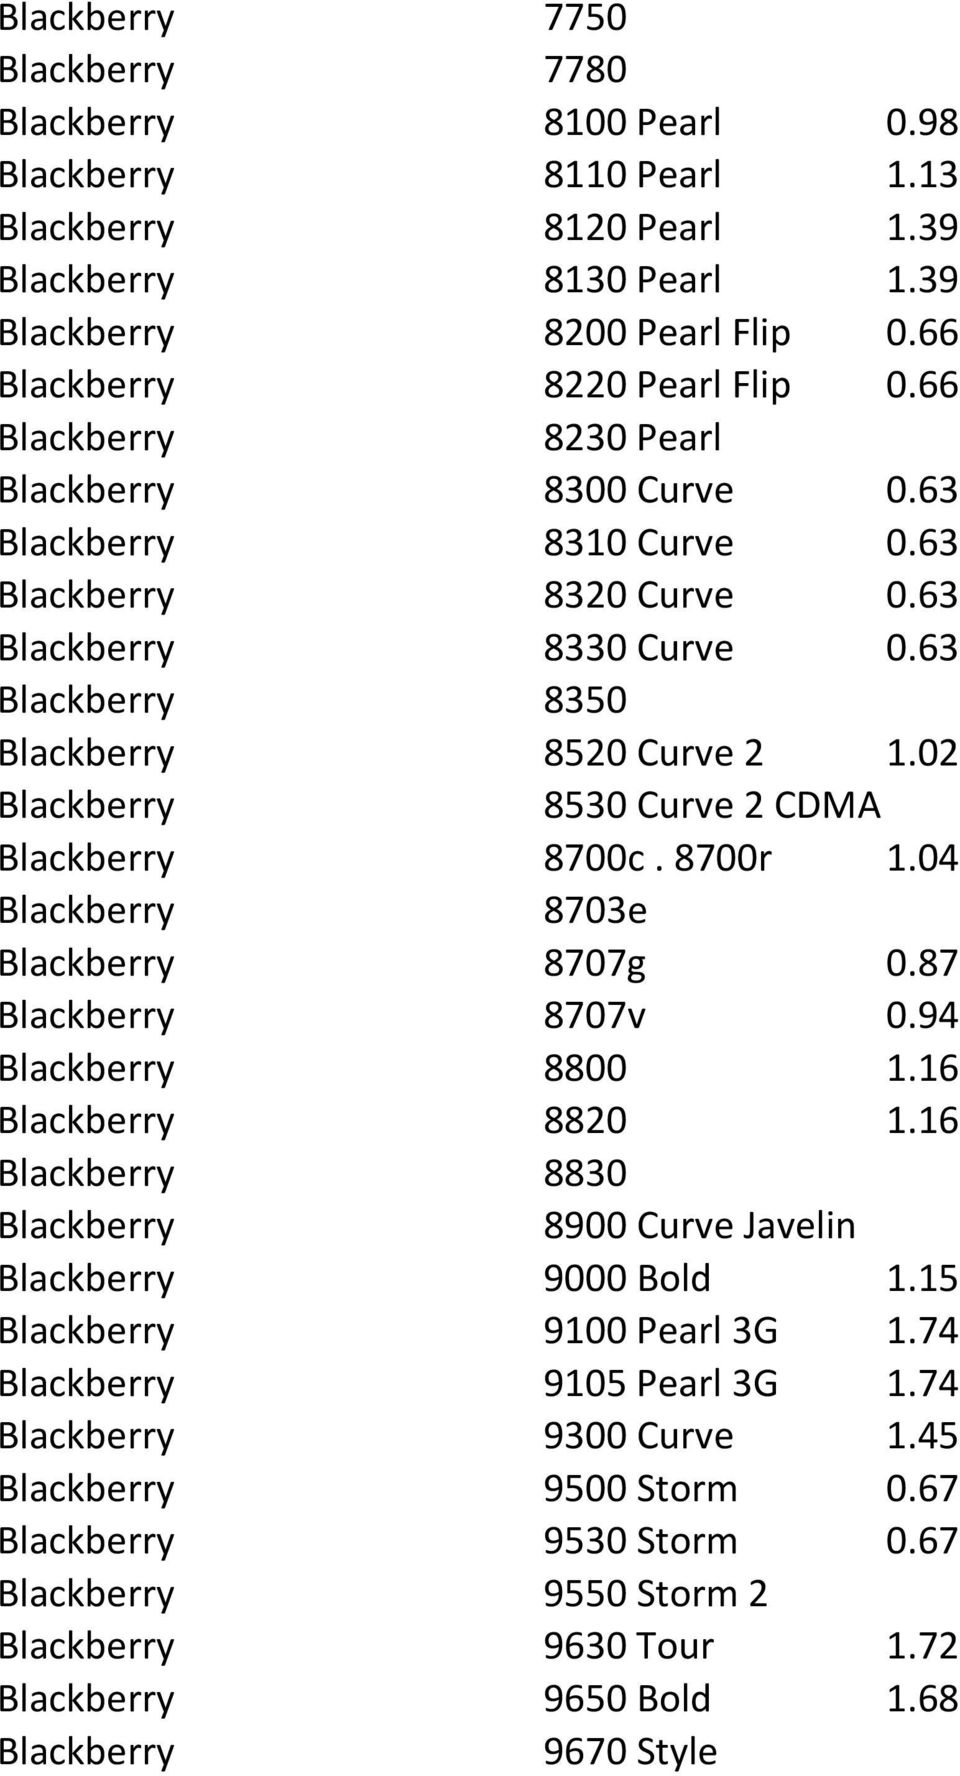 63 Blackberry 8350 Blackberry 8520 Curve 2 1.02 Blackberry 8530 Curve 2 CDMA Blackberry 8700c. 8700r 1.04 Blackberry 8703e Blackberry 8707g 0.87 Blackberry 8707v 0.94 Blackberry 8800 1.